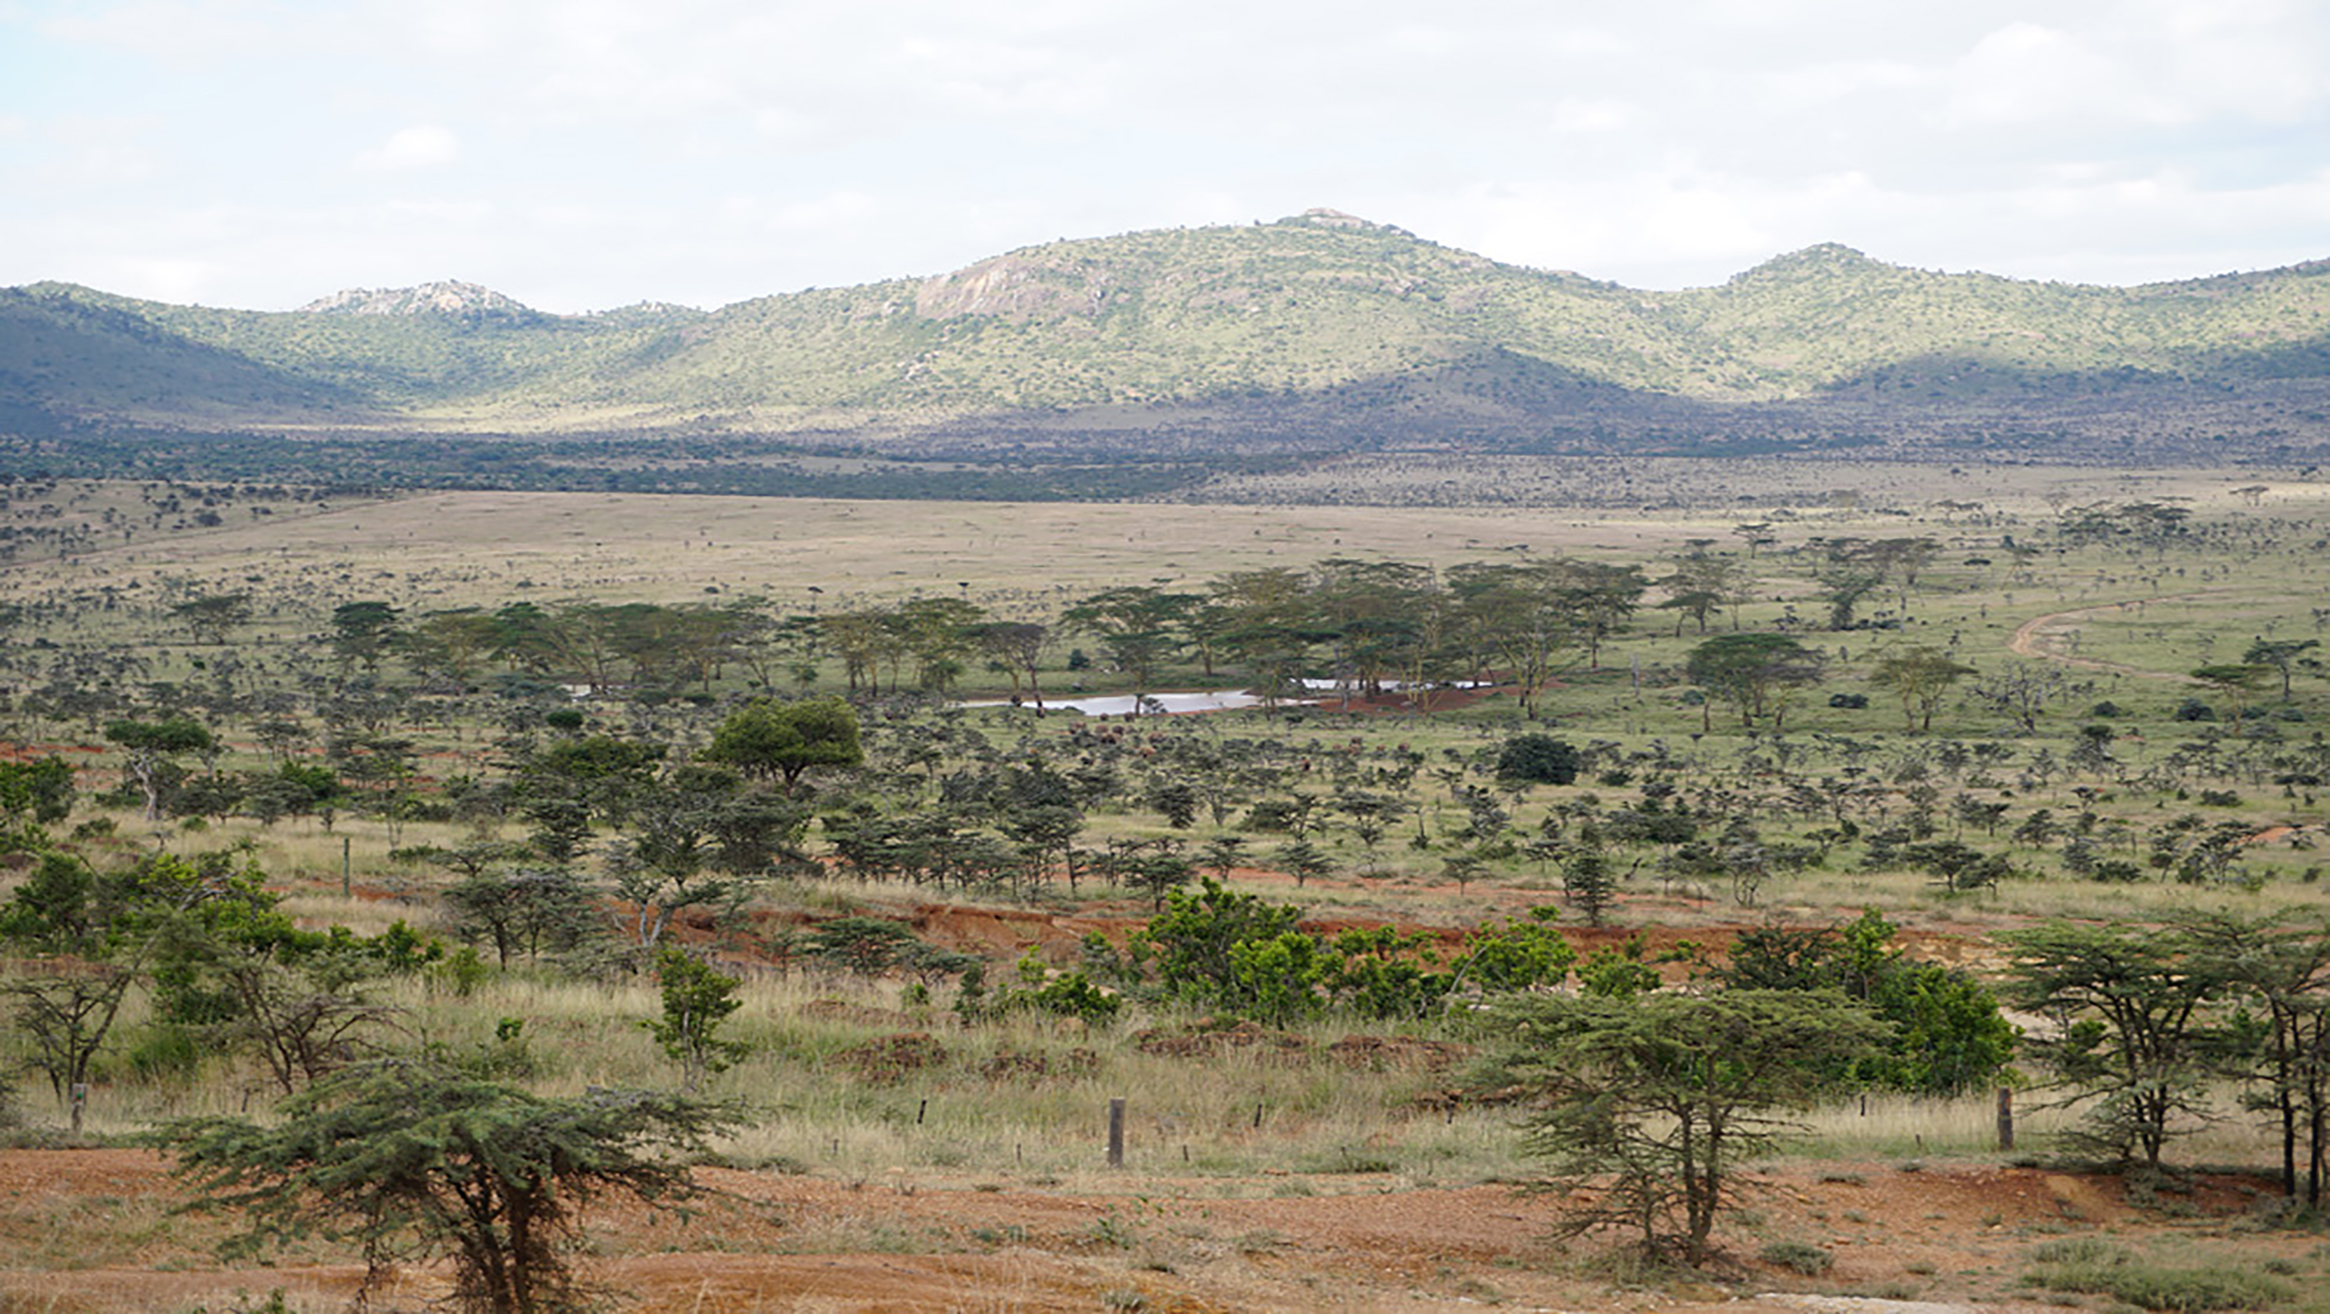 Naturschutzgebiet nördlich des Mount Kenia, eine der beiden Regionen des Pilotprojekts. Bild: Kasper Hurni, CDE